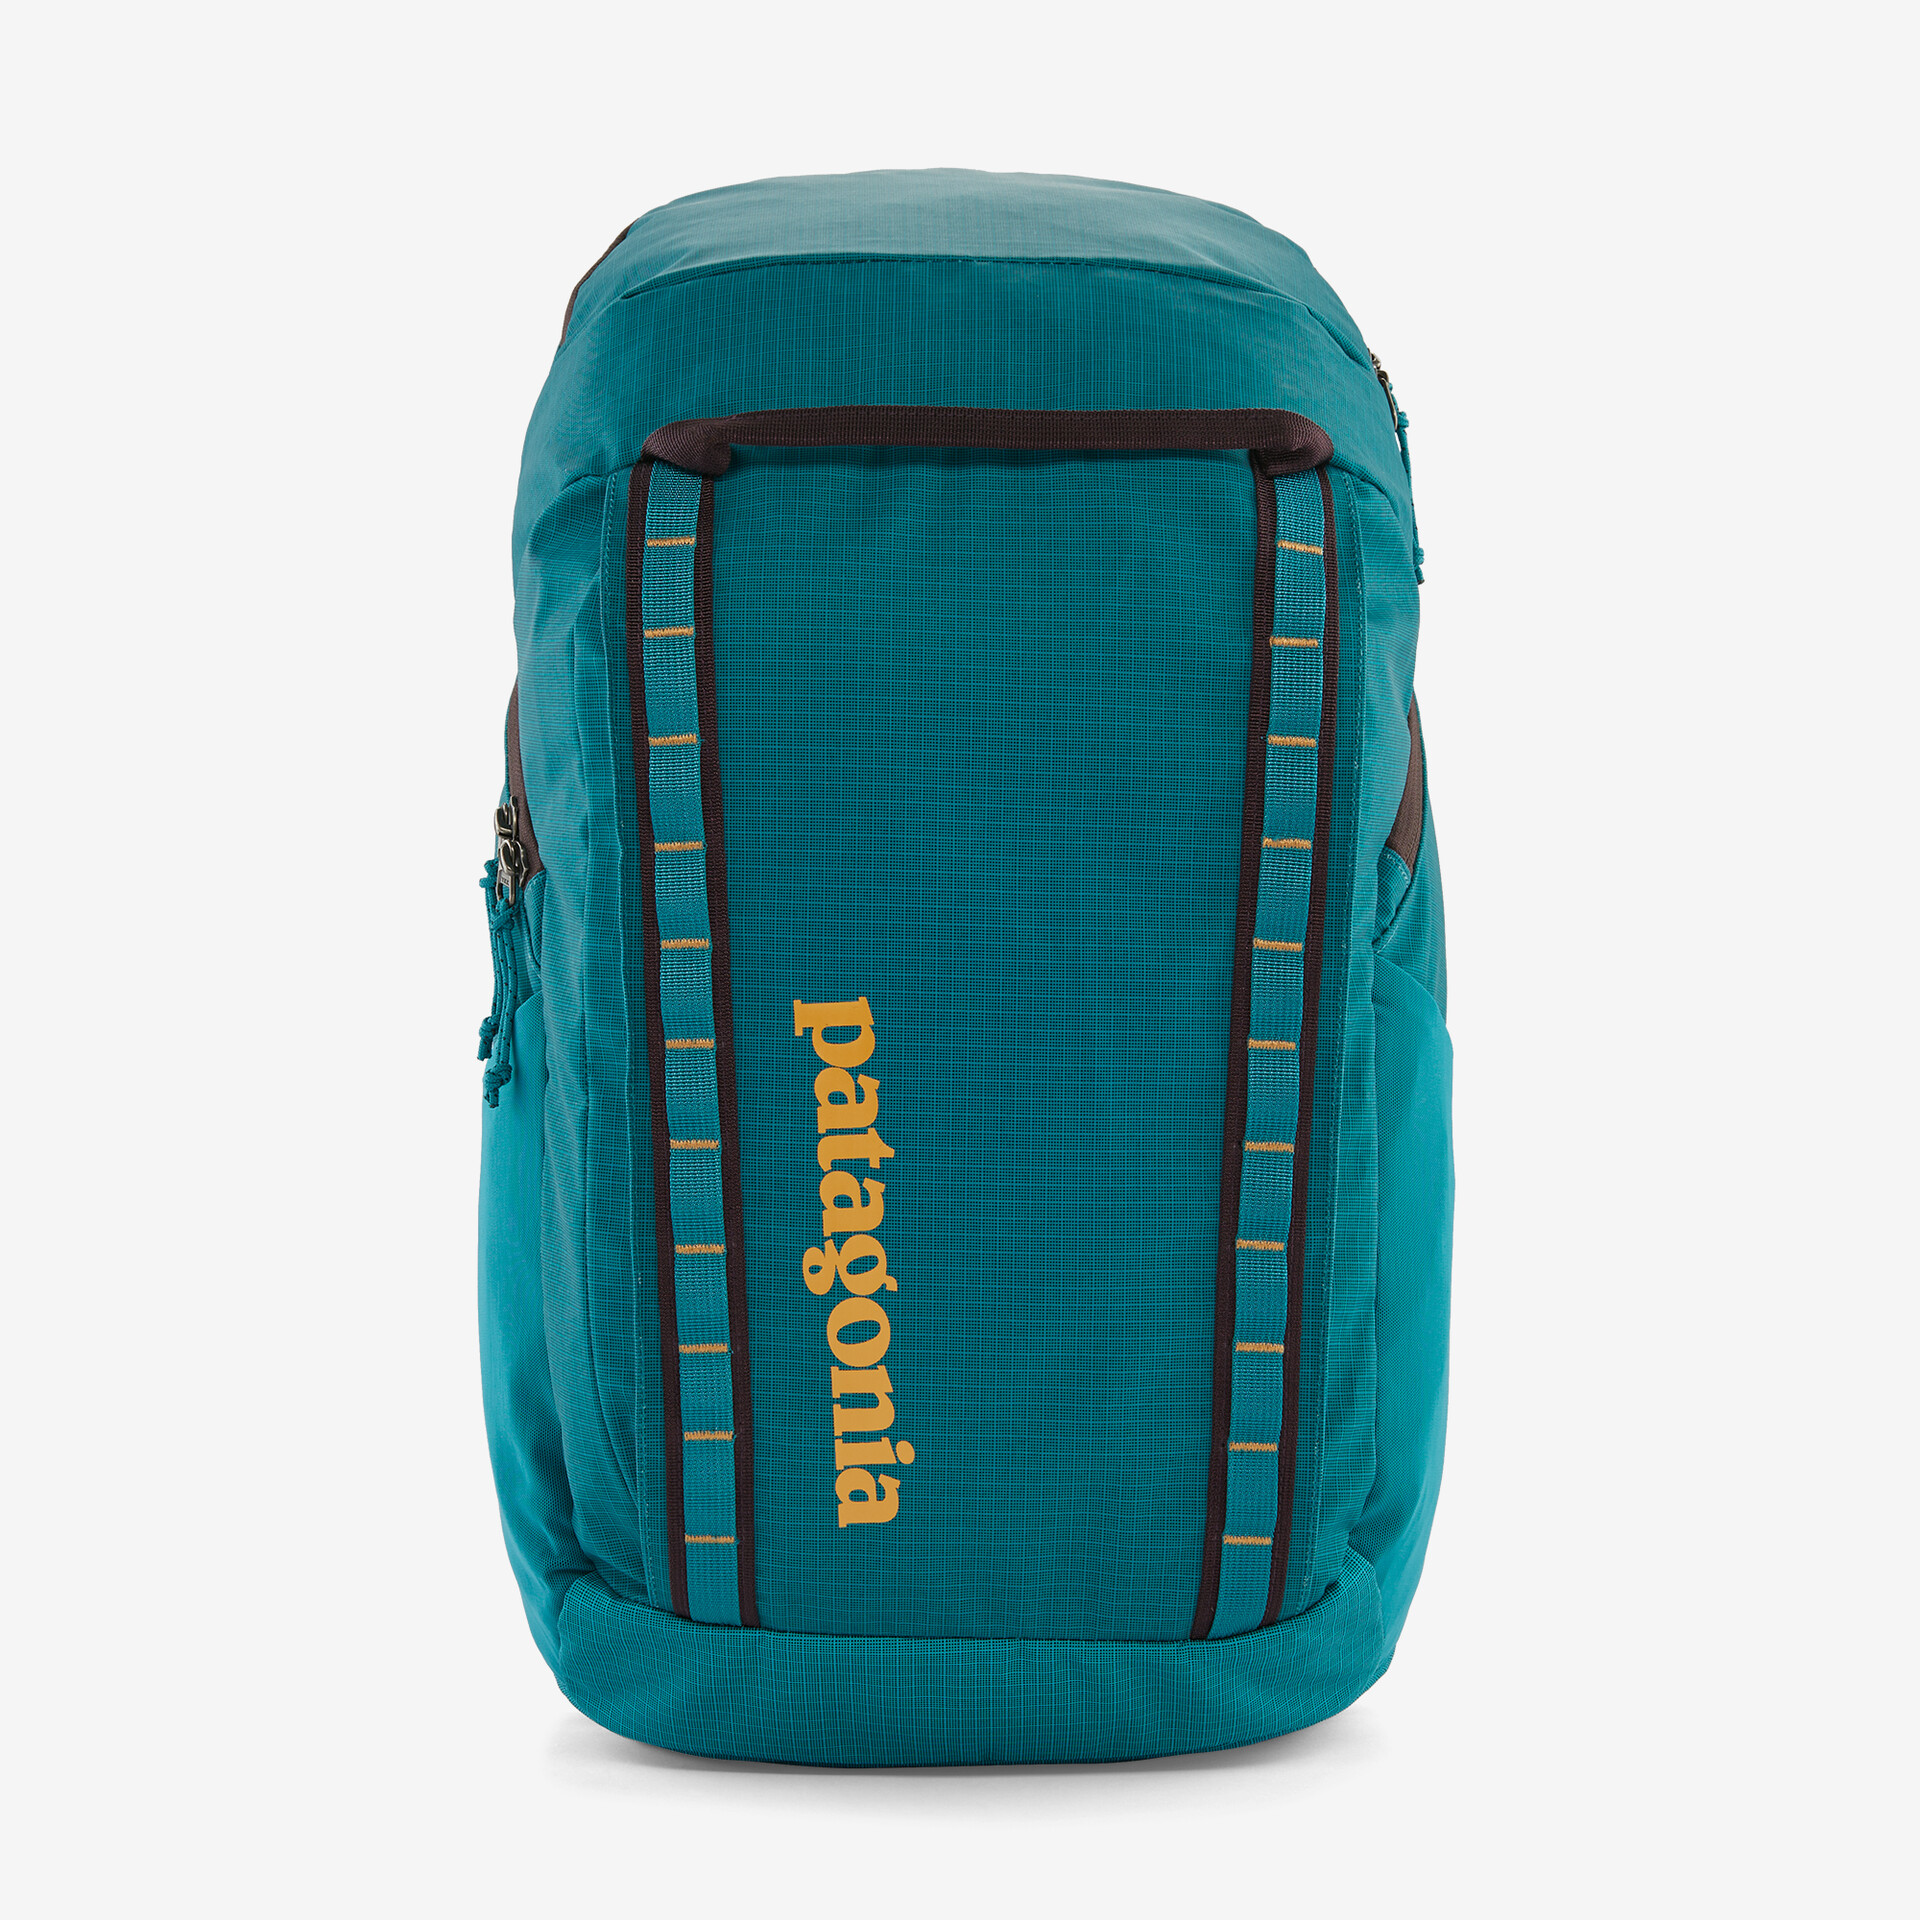 10 Best Backpack Brands